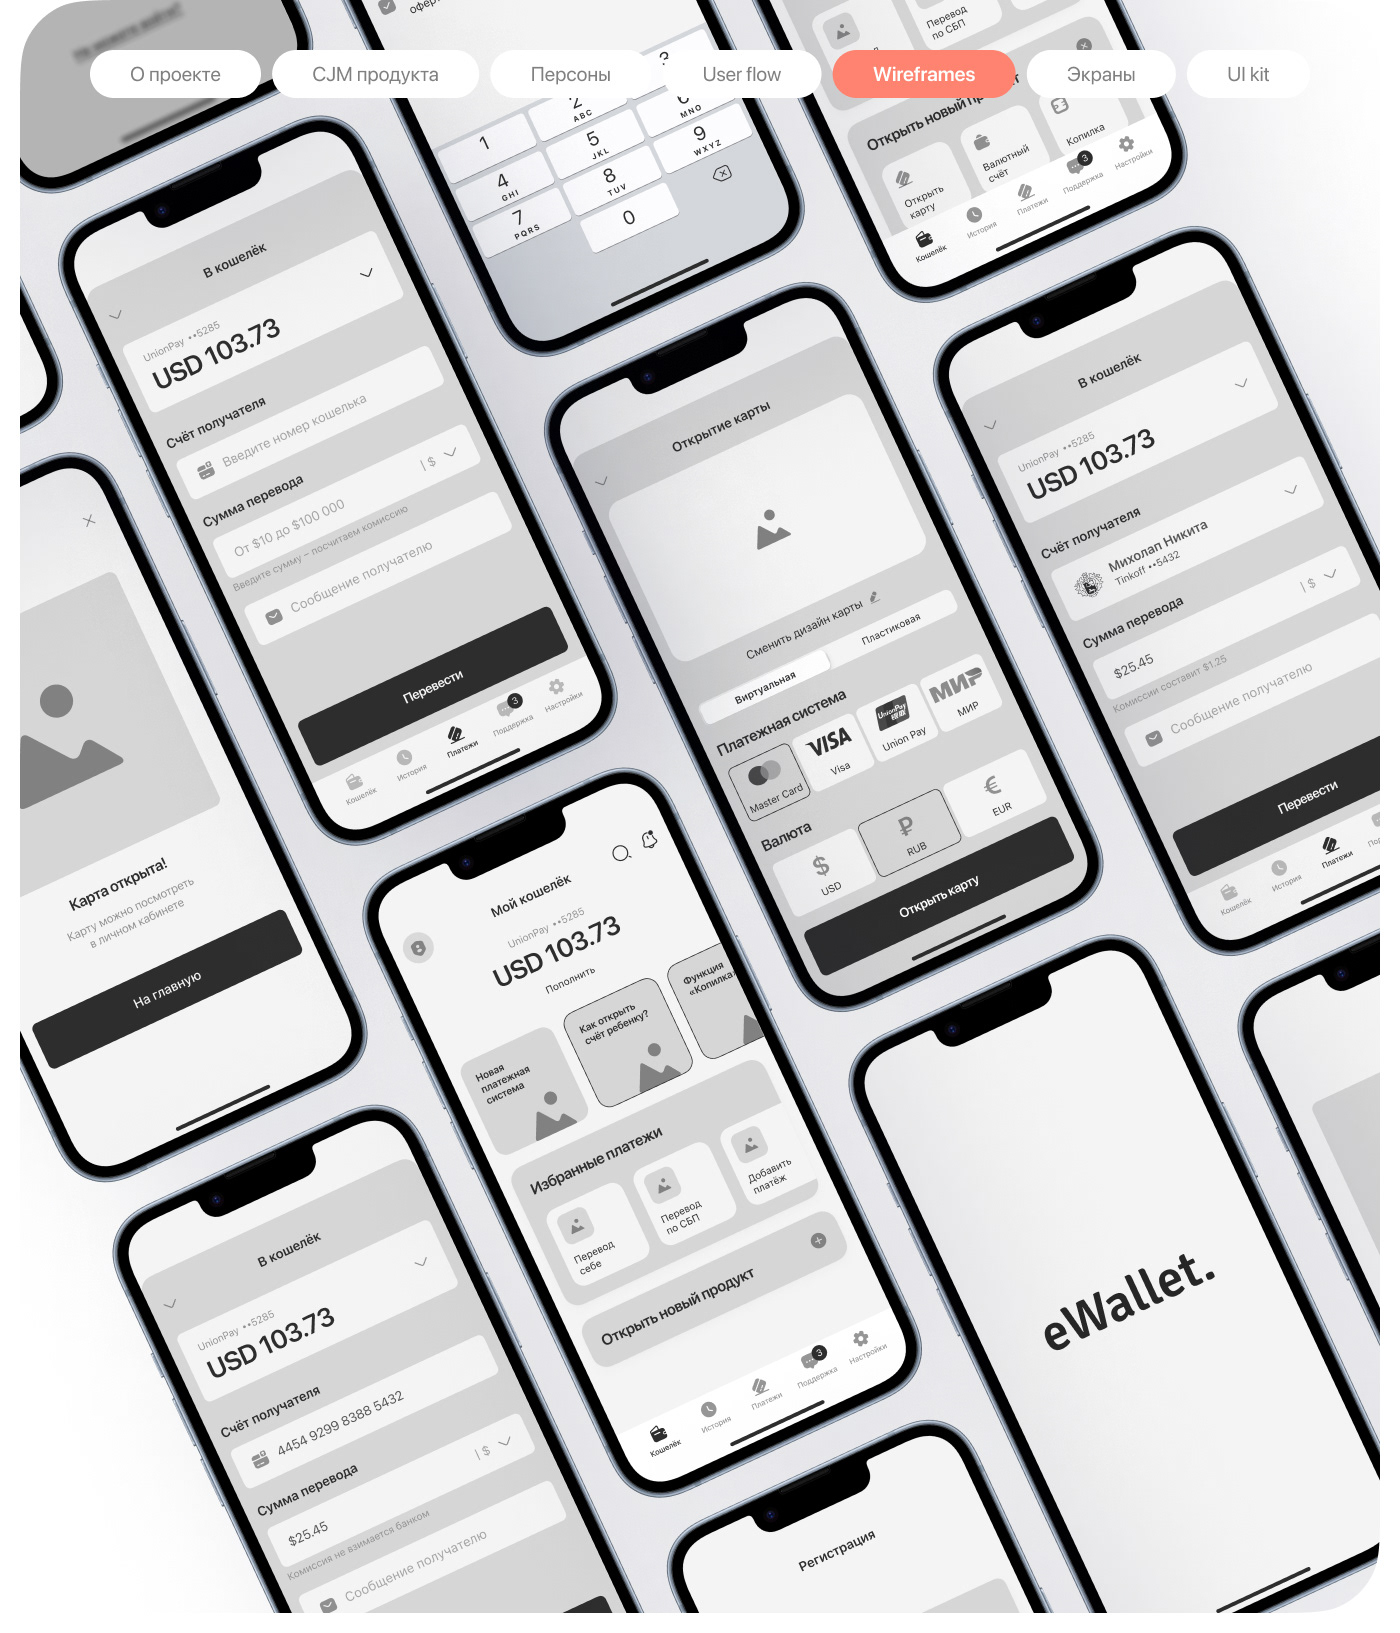 ux/ui UX design ui design user interface app design mobile Figma Mobile app UI/UX user experience